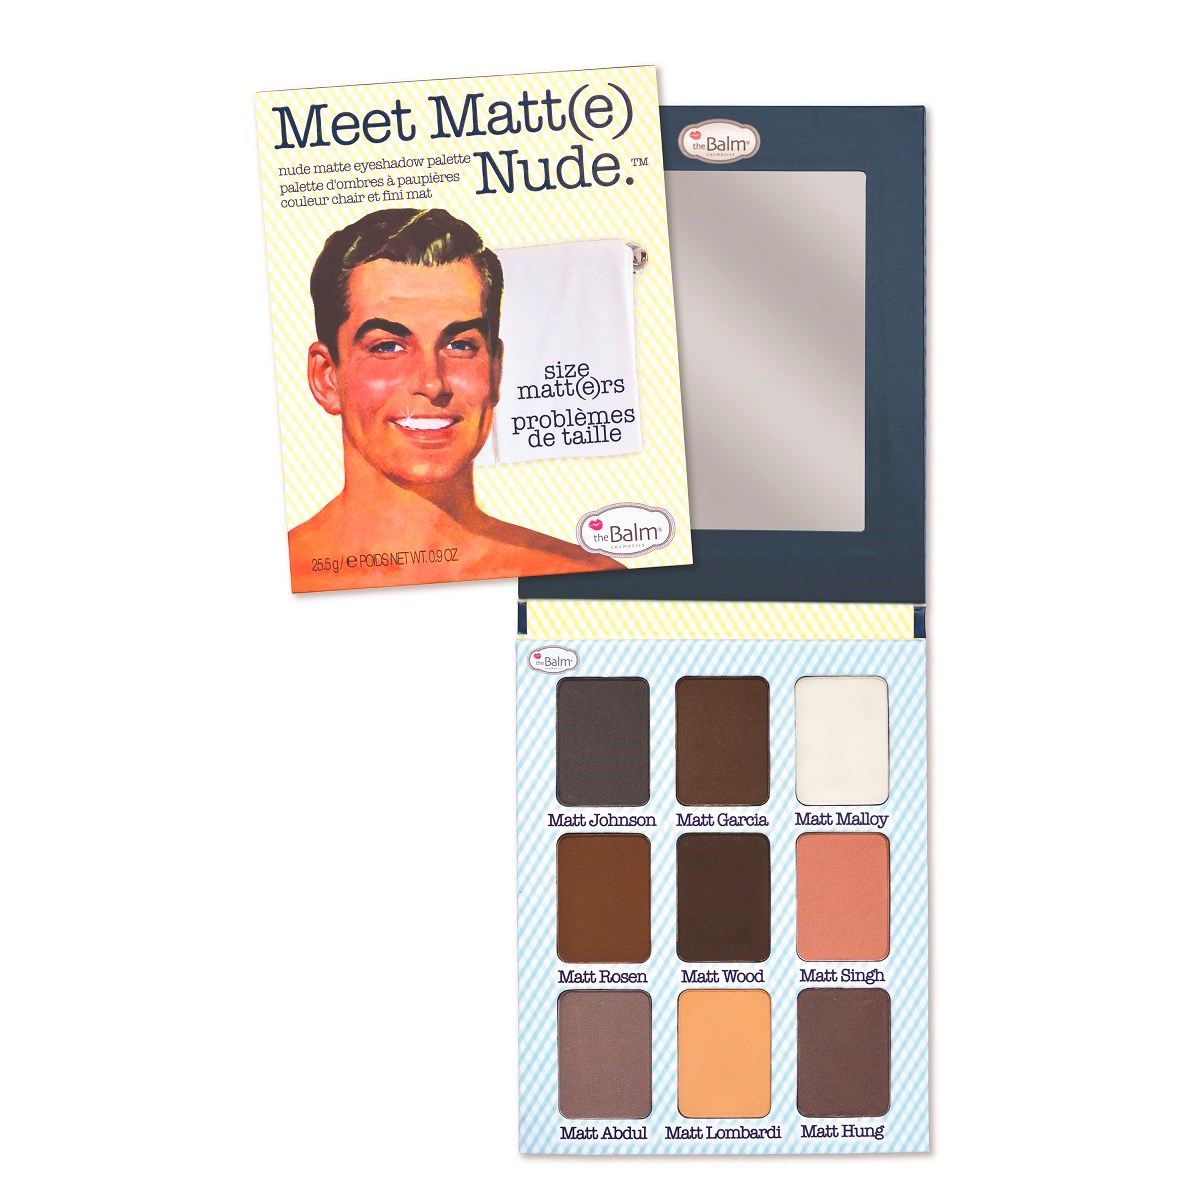 the Balm Meet Matt(e) Nude Eyeshadow Palette